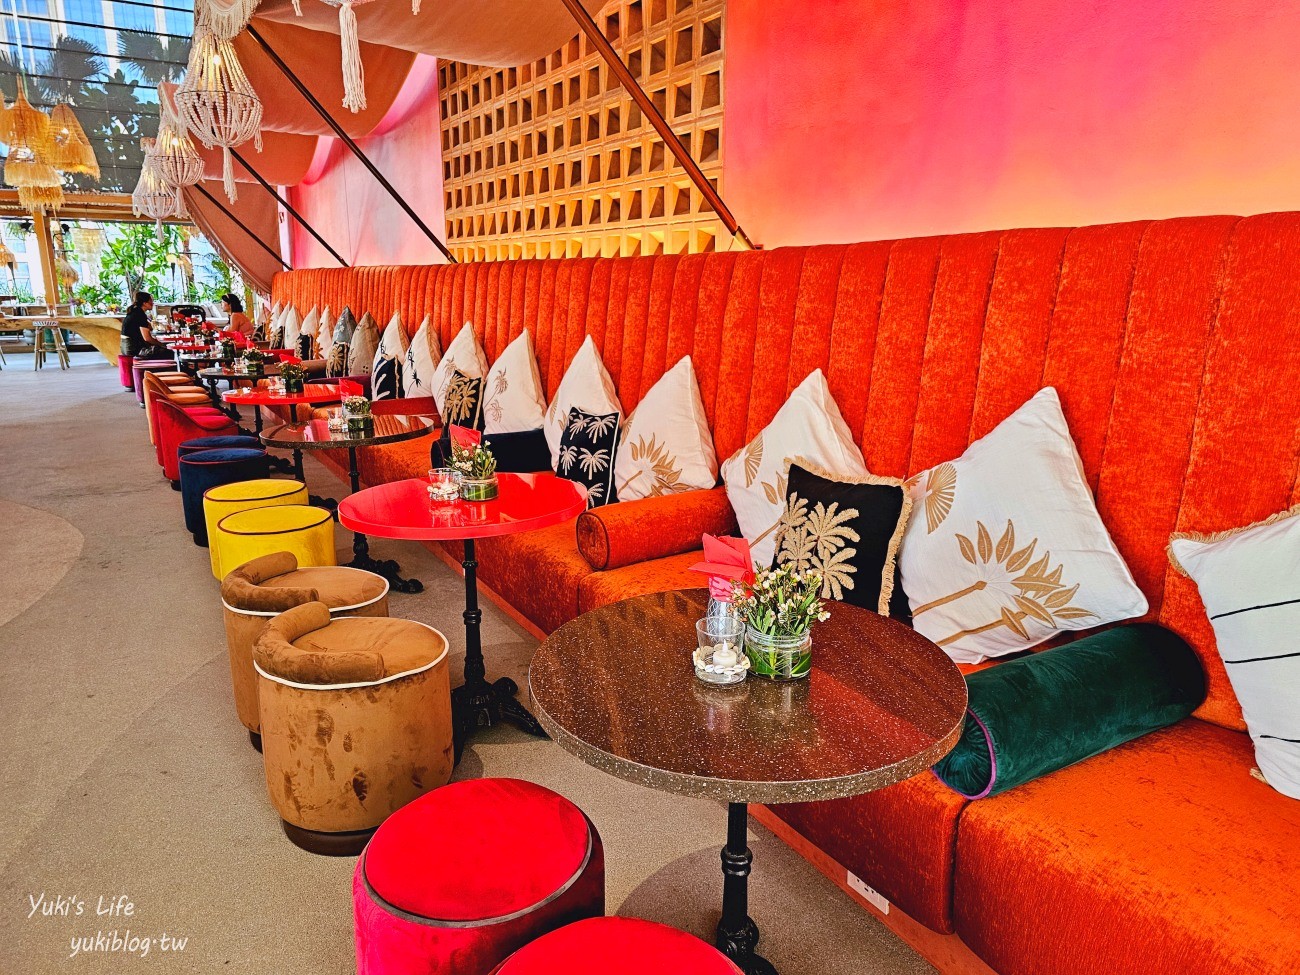 曼谷最新酒吧【TRIBE Sky Beach Club】藏在百貨裡的海島渡假，從早到晚享受池畔Chill氛圍 - yukiblog.tw